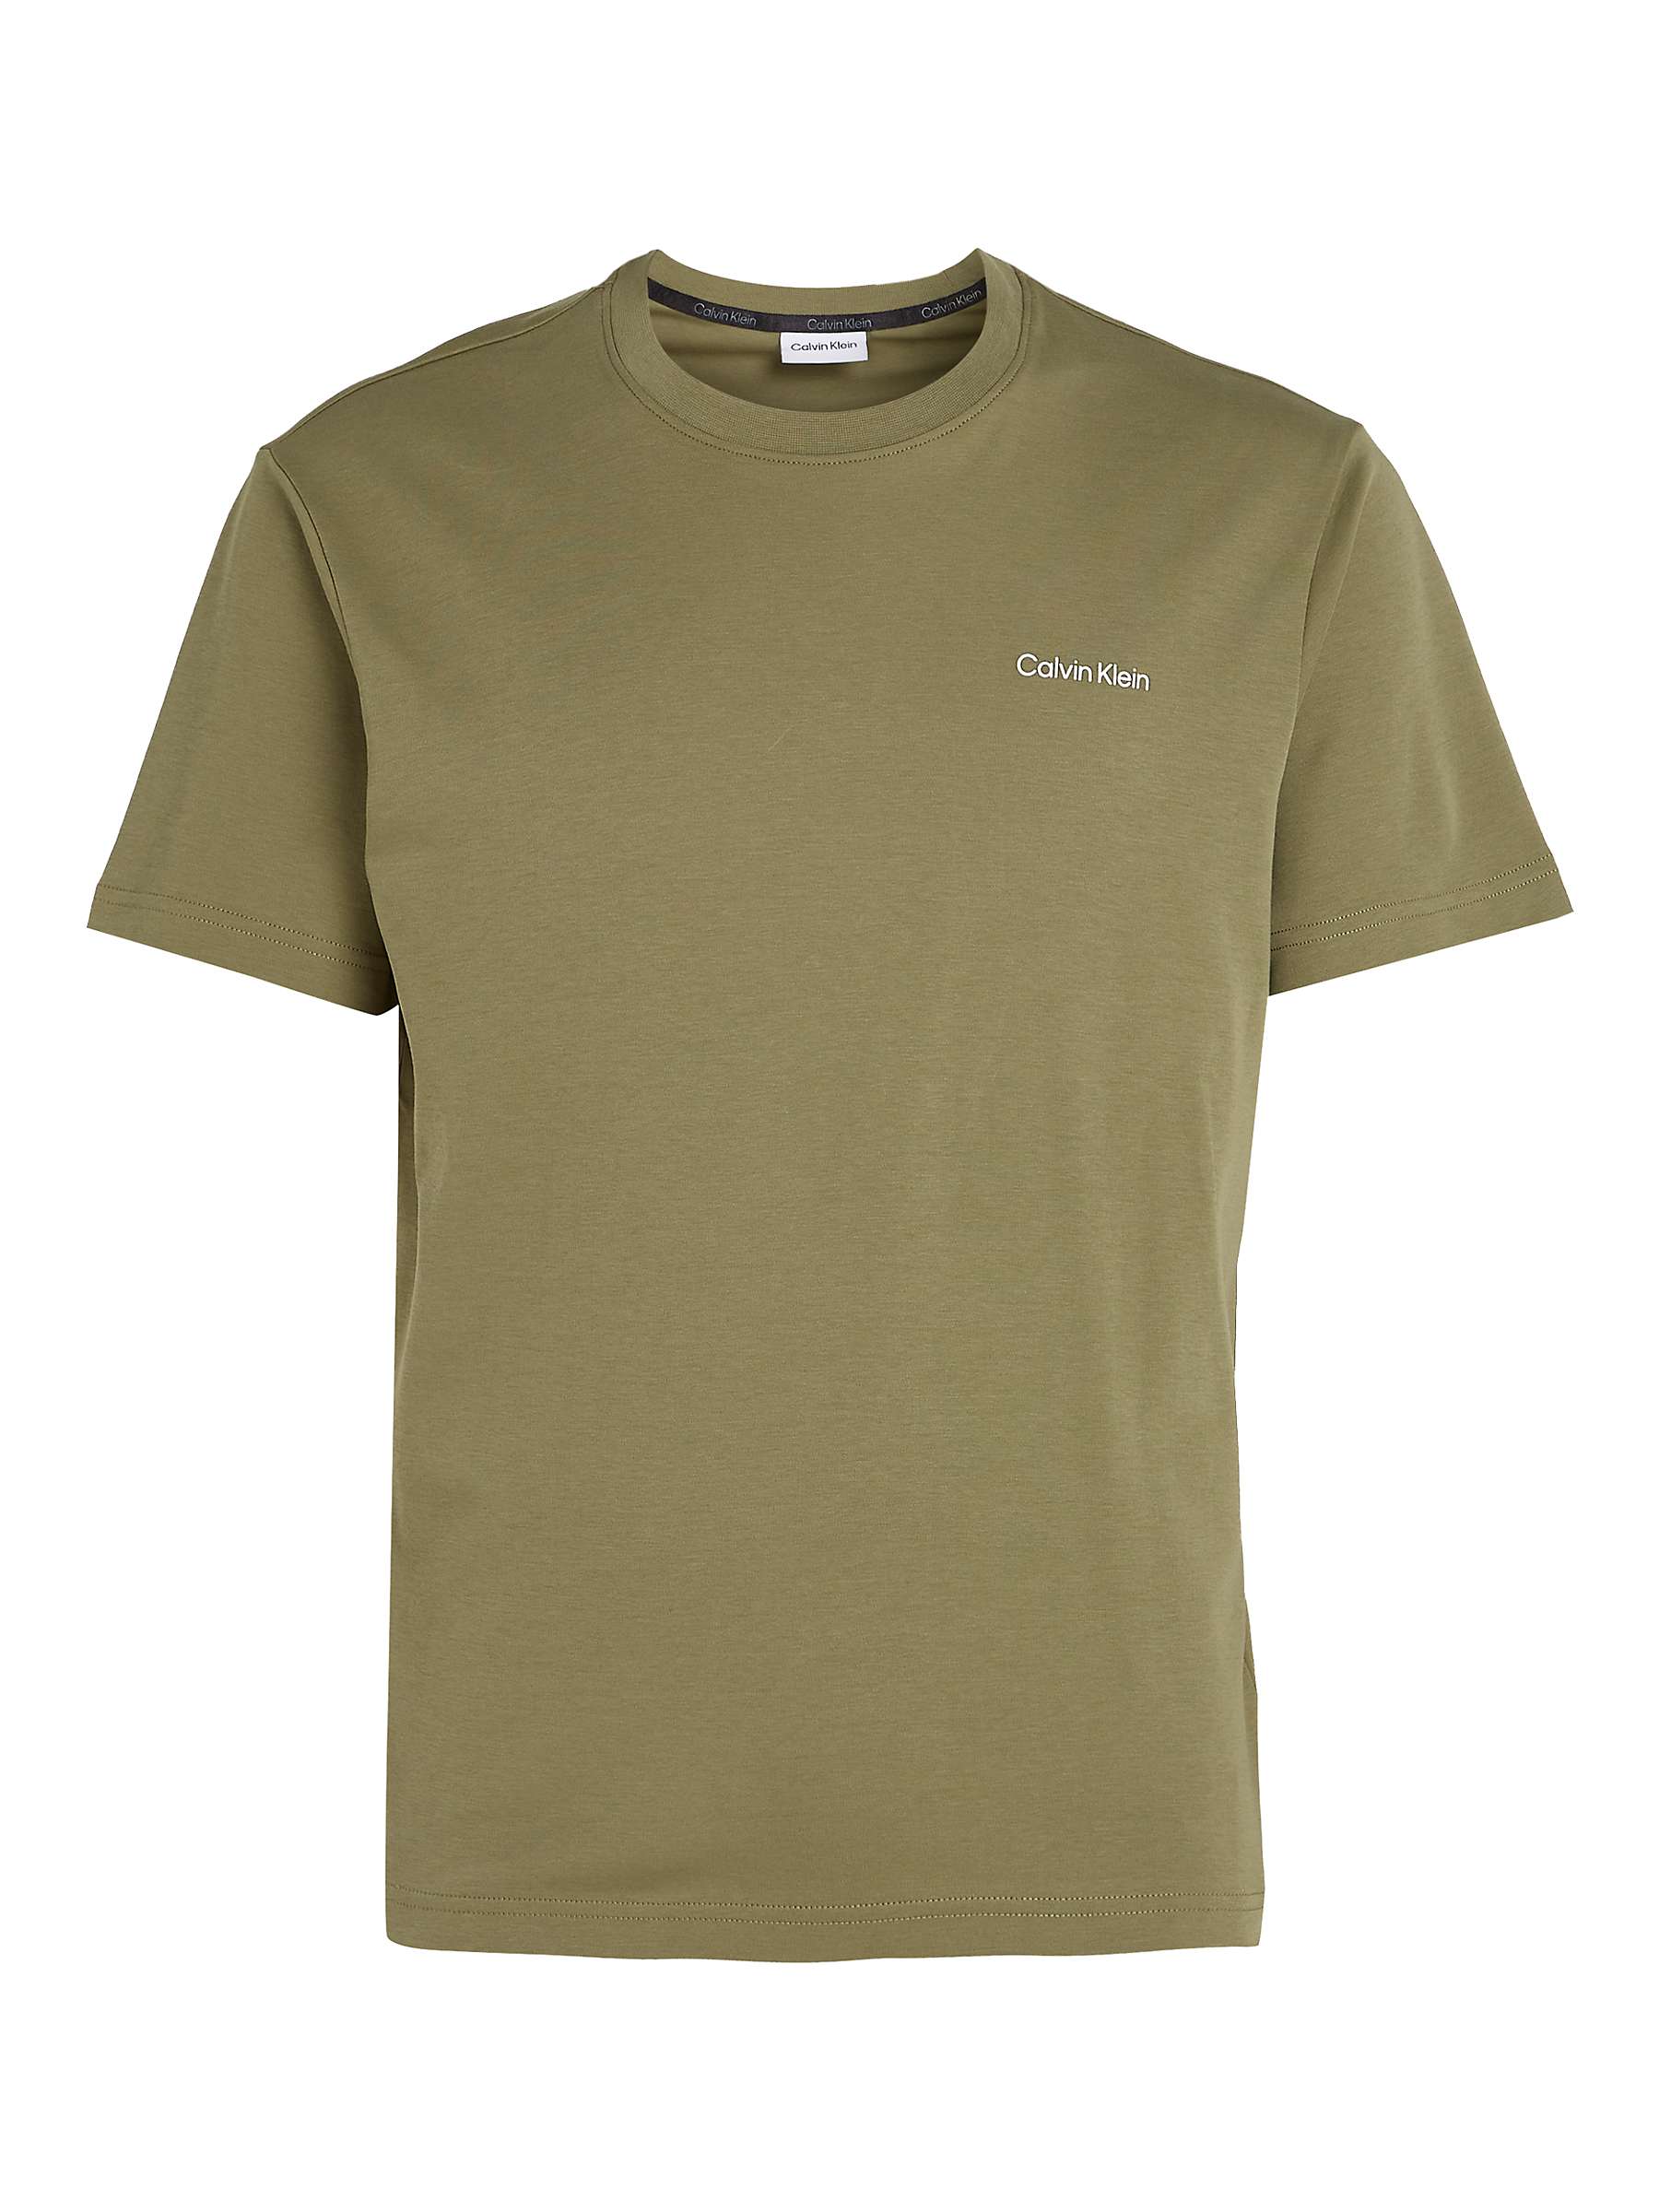 Buy Calvin Klein Micro Logo T-Shirt Online at johnlewis.com